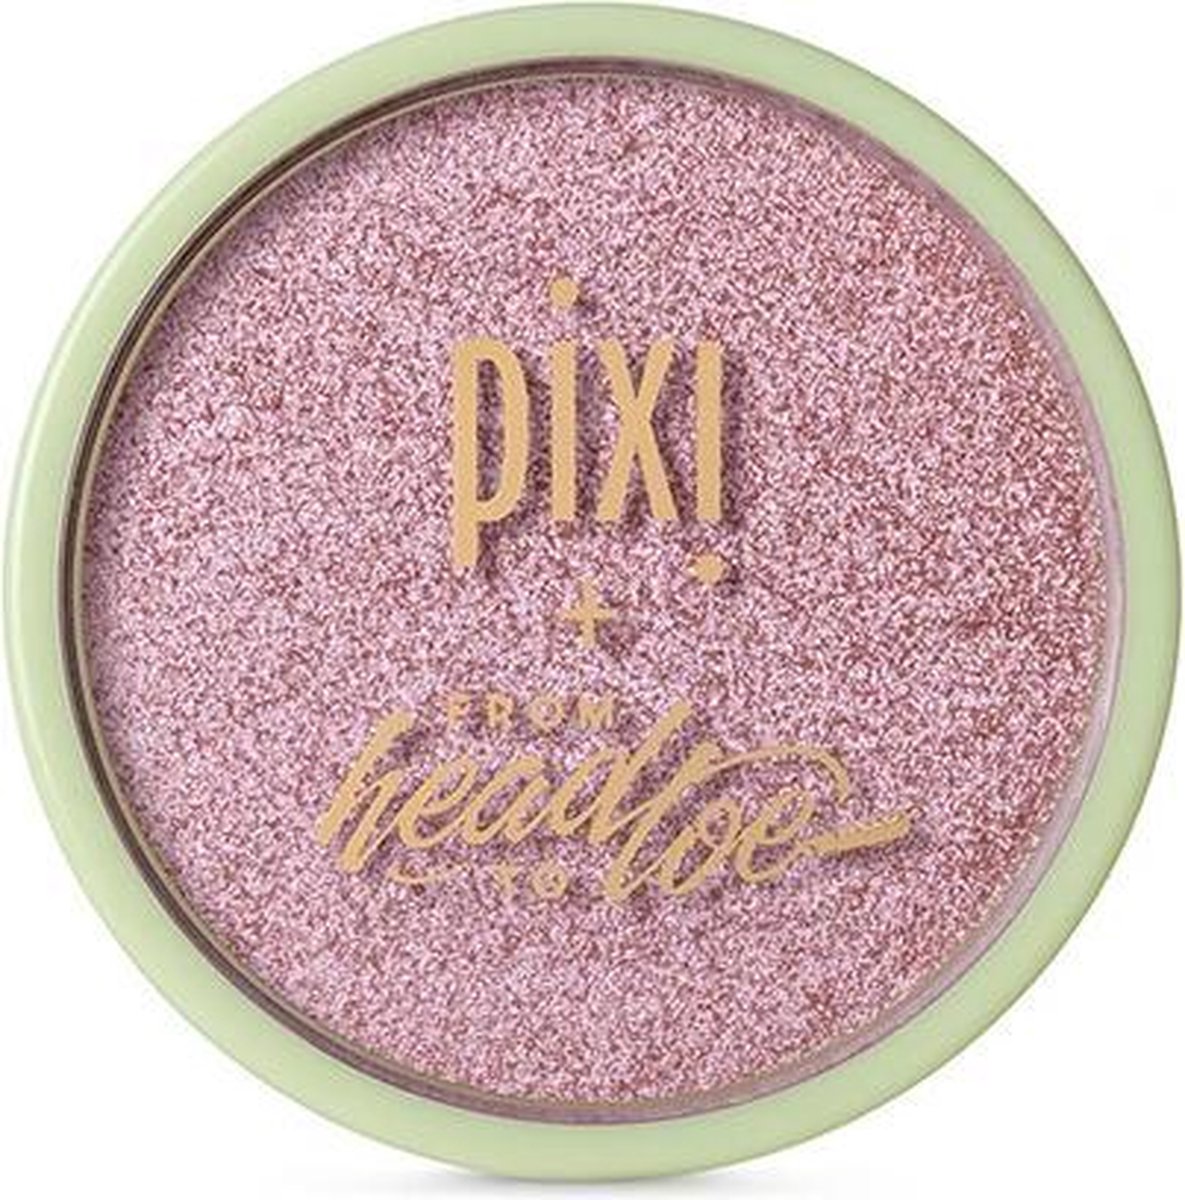 PIXI - Glow-Y Powder Wednesdays - 9.07 g - pressed powder